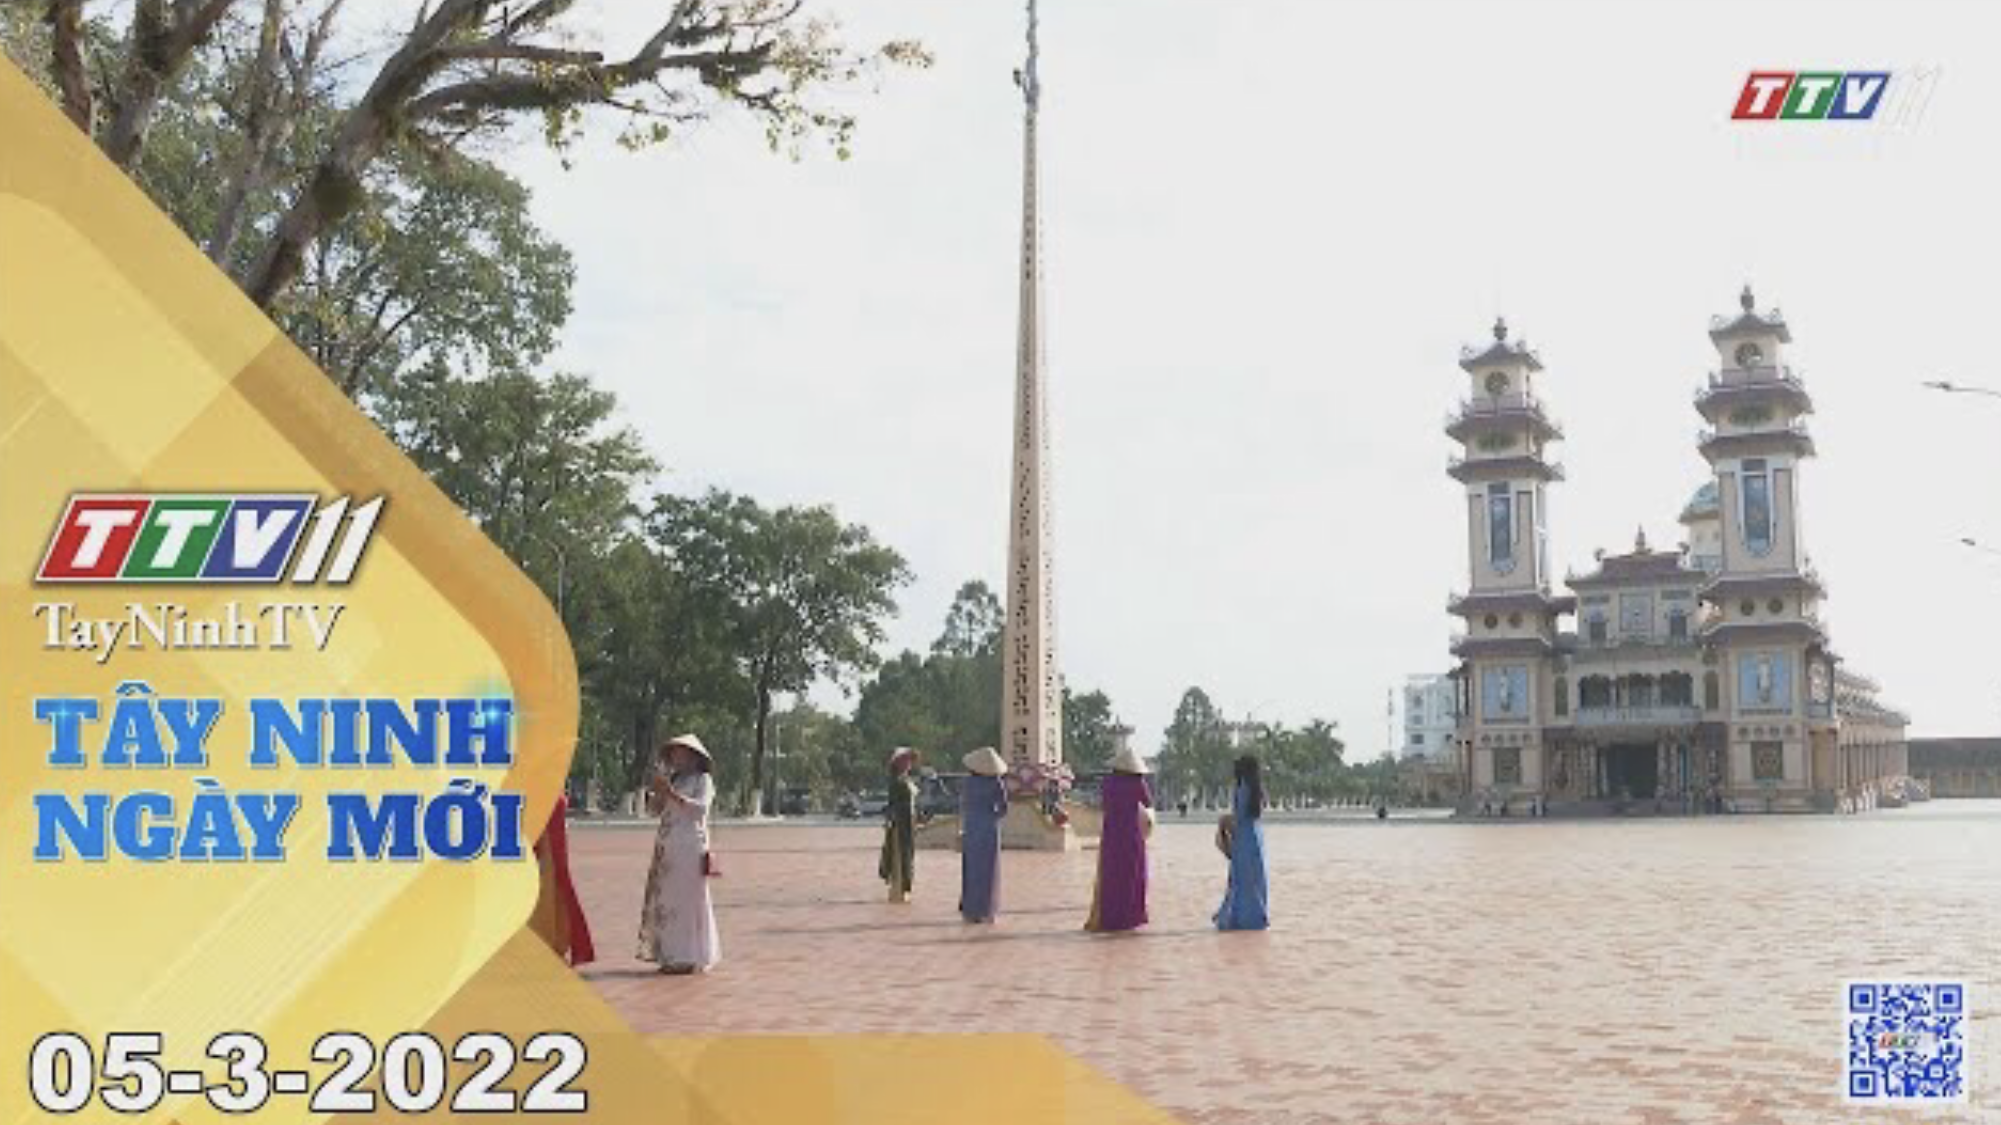 Tây Ninh ngày mới 05-3-2022 | Tin tức hôm nay | TayNinhTV